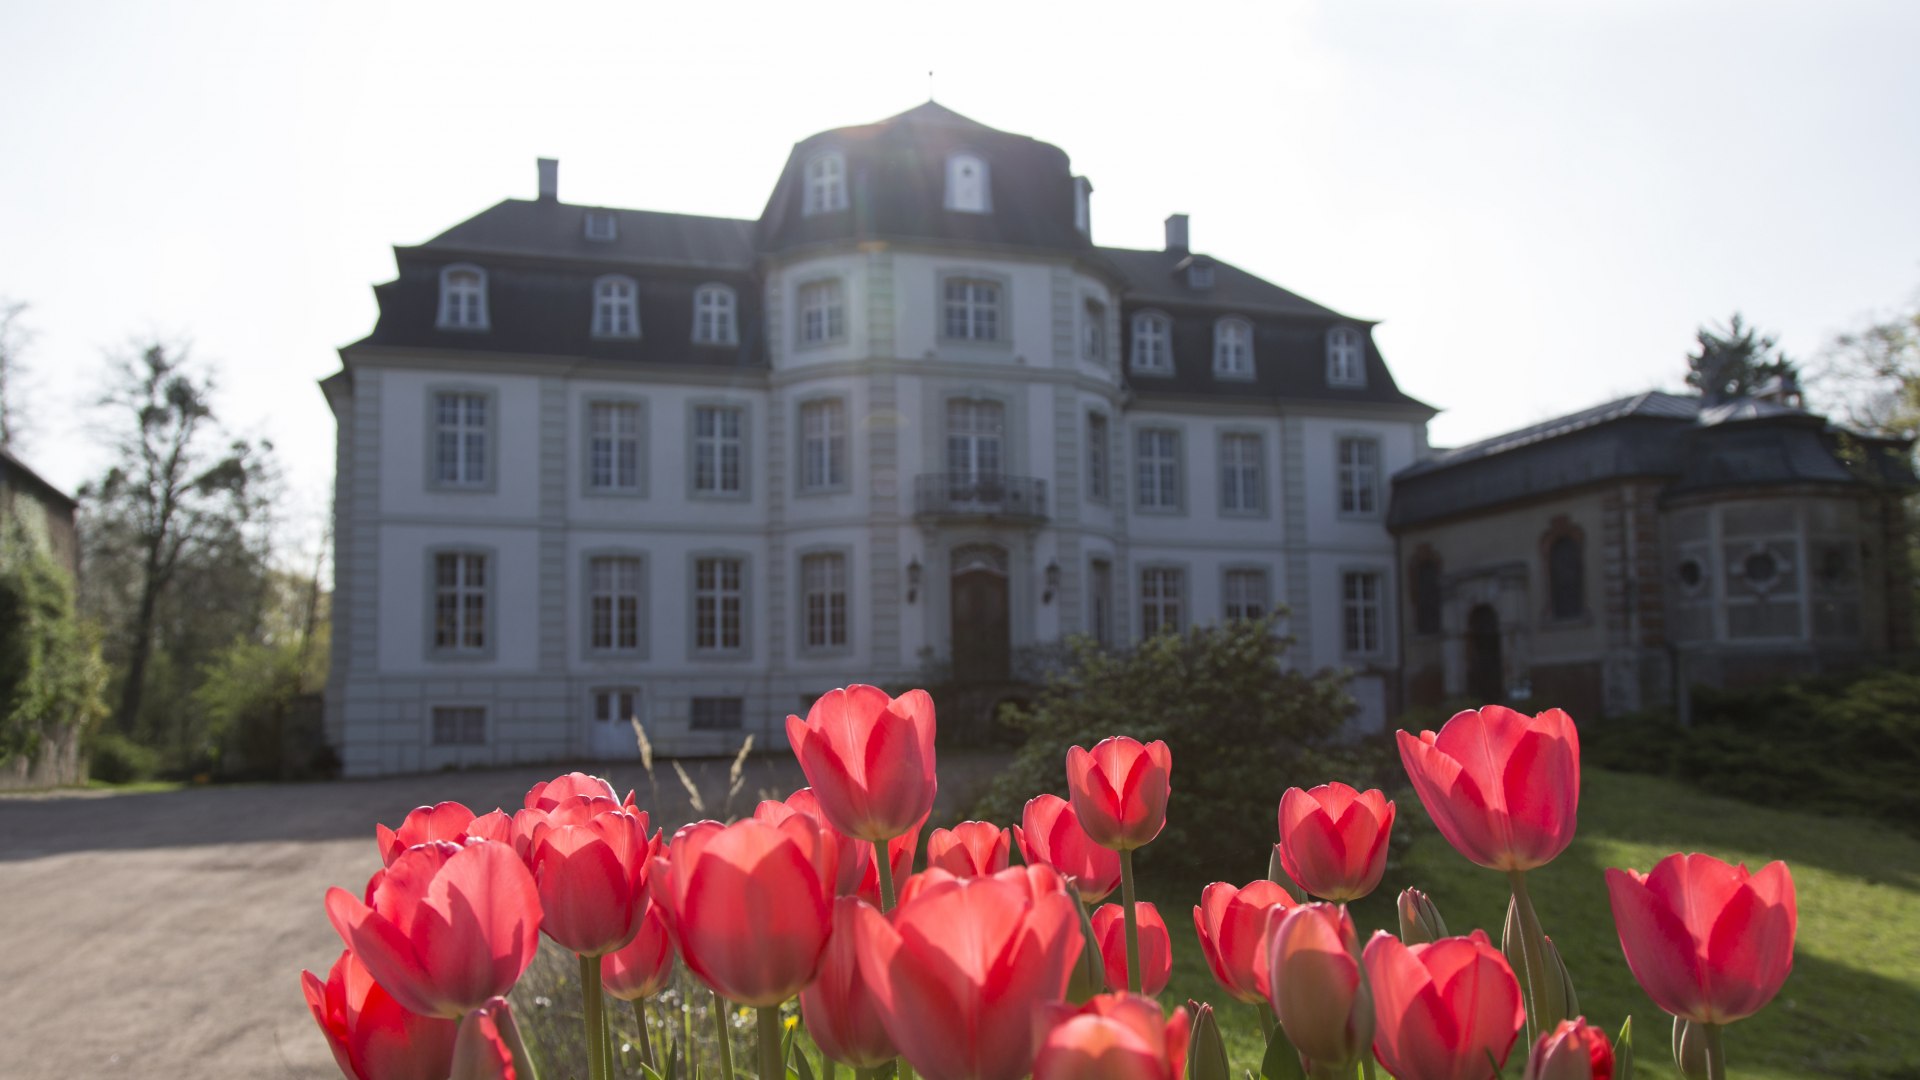 Frühling am Schloss: rote Tulpen blühen vor dem Schlossportal, © Ralph Sondermann, Tourismus NRW e.V.